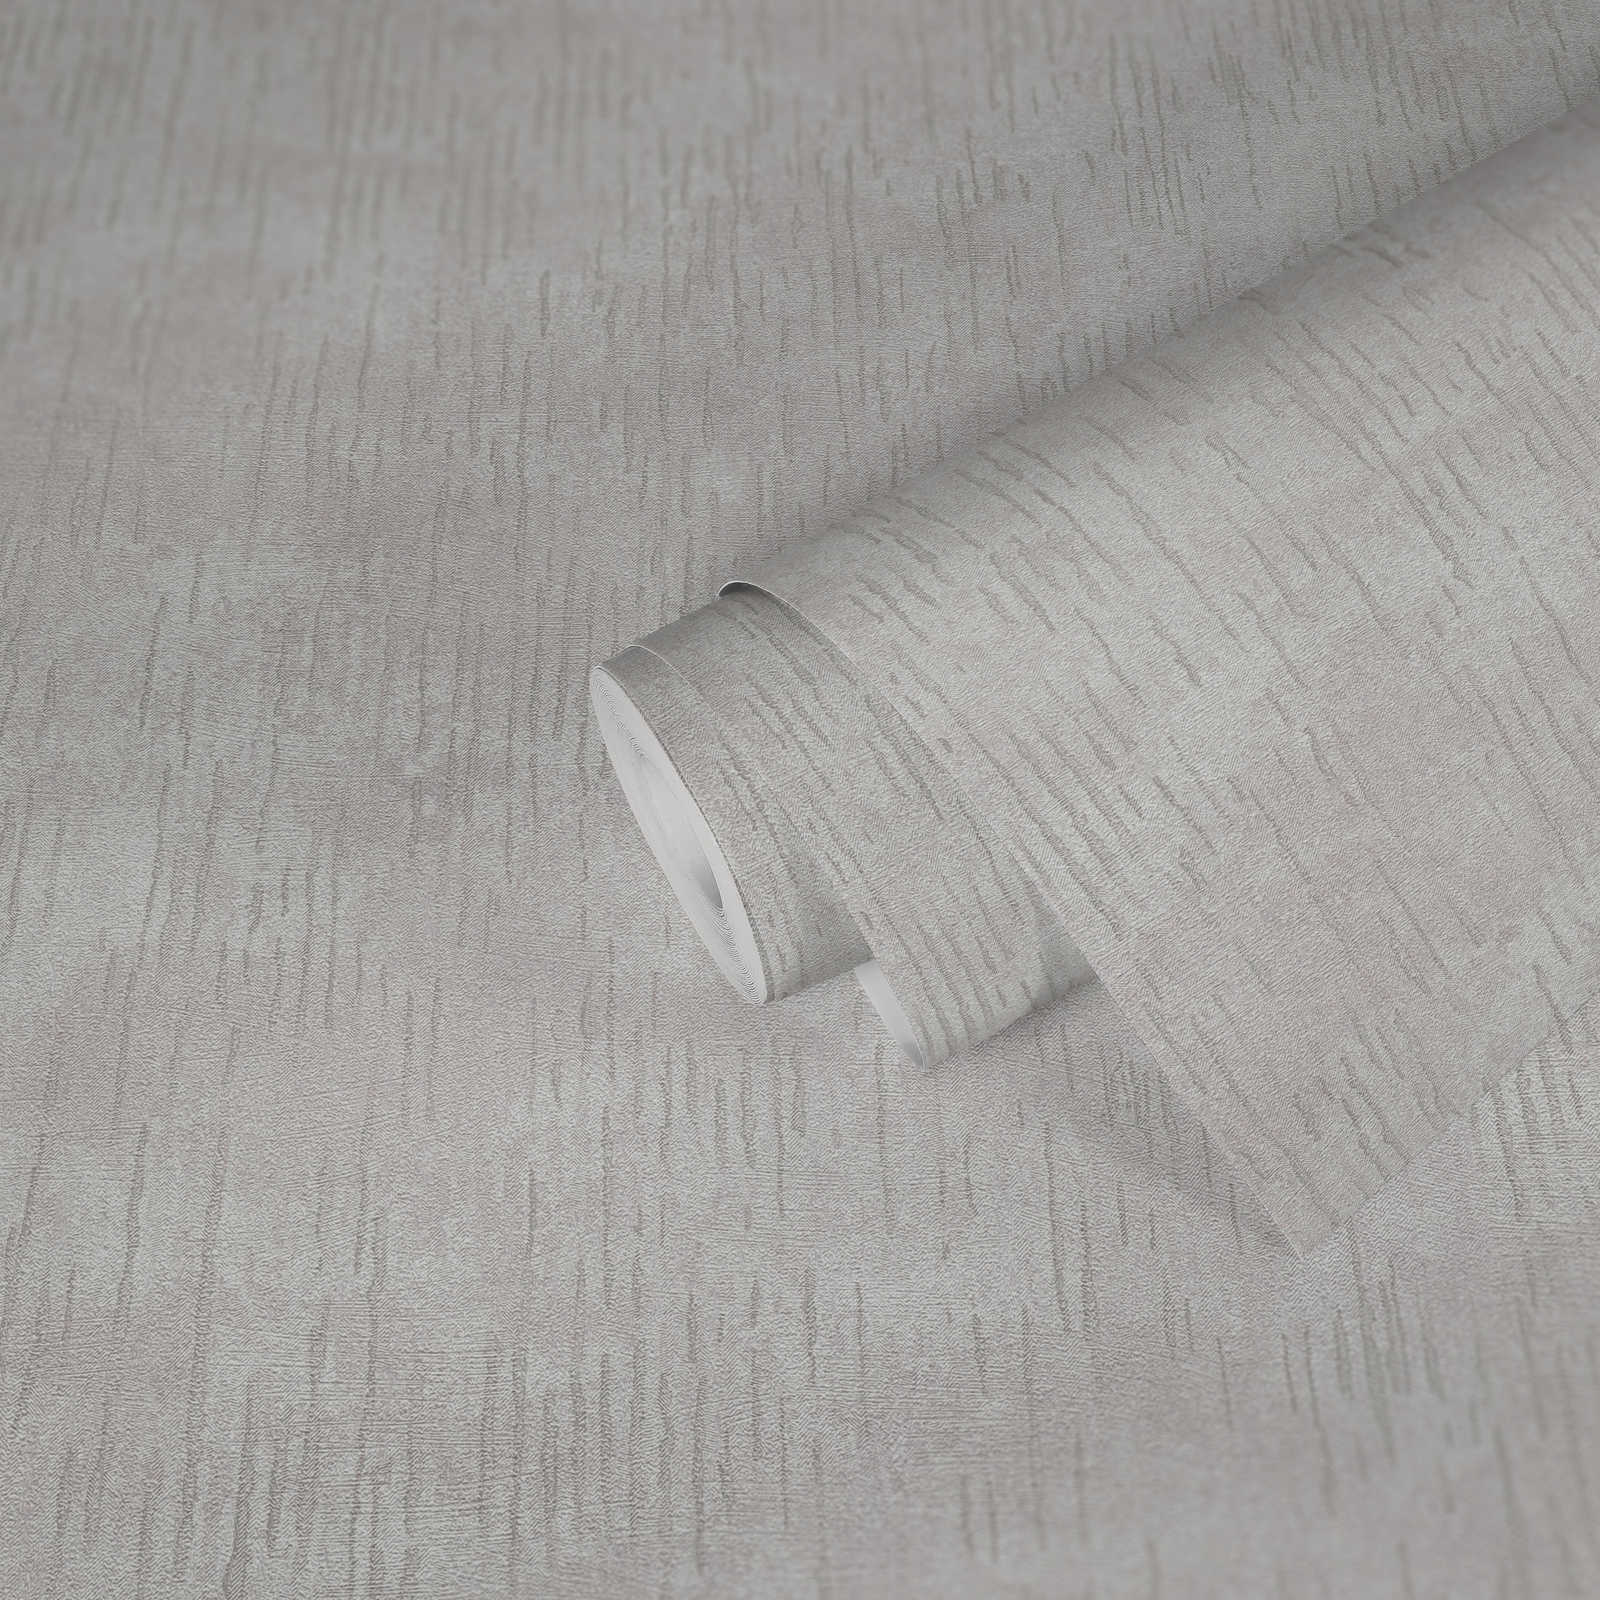             Glänzende Struktur-Tapete mit Metallic Muster – Beige, Creme, Metallic
        